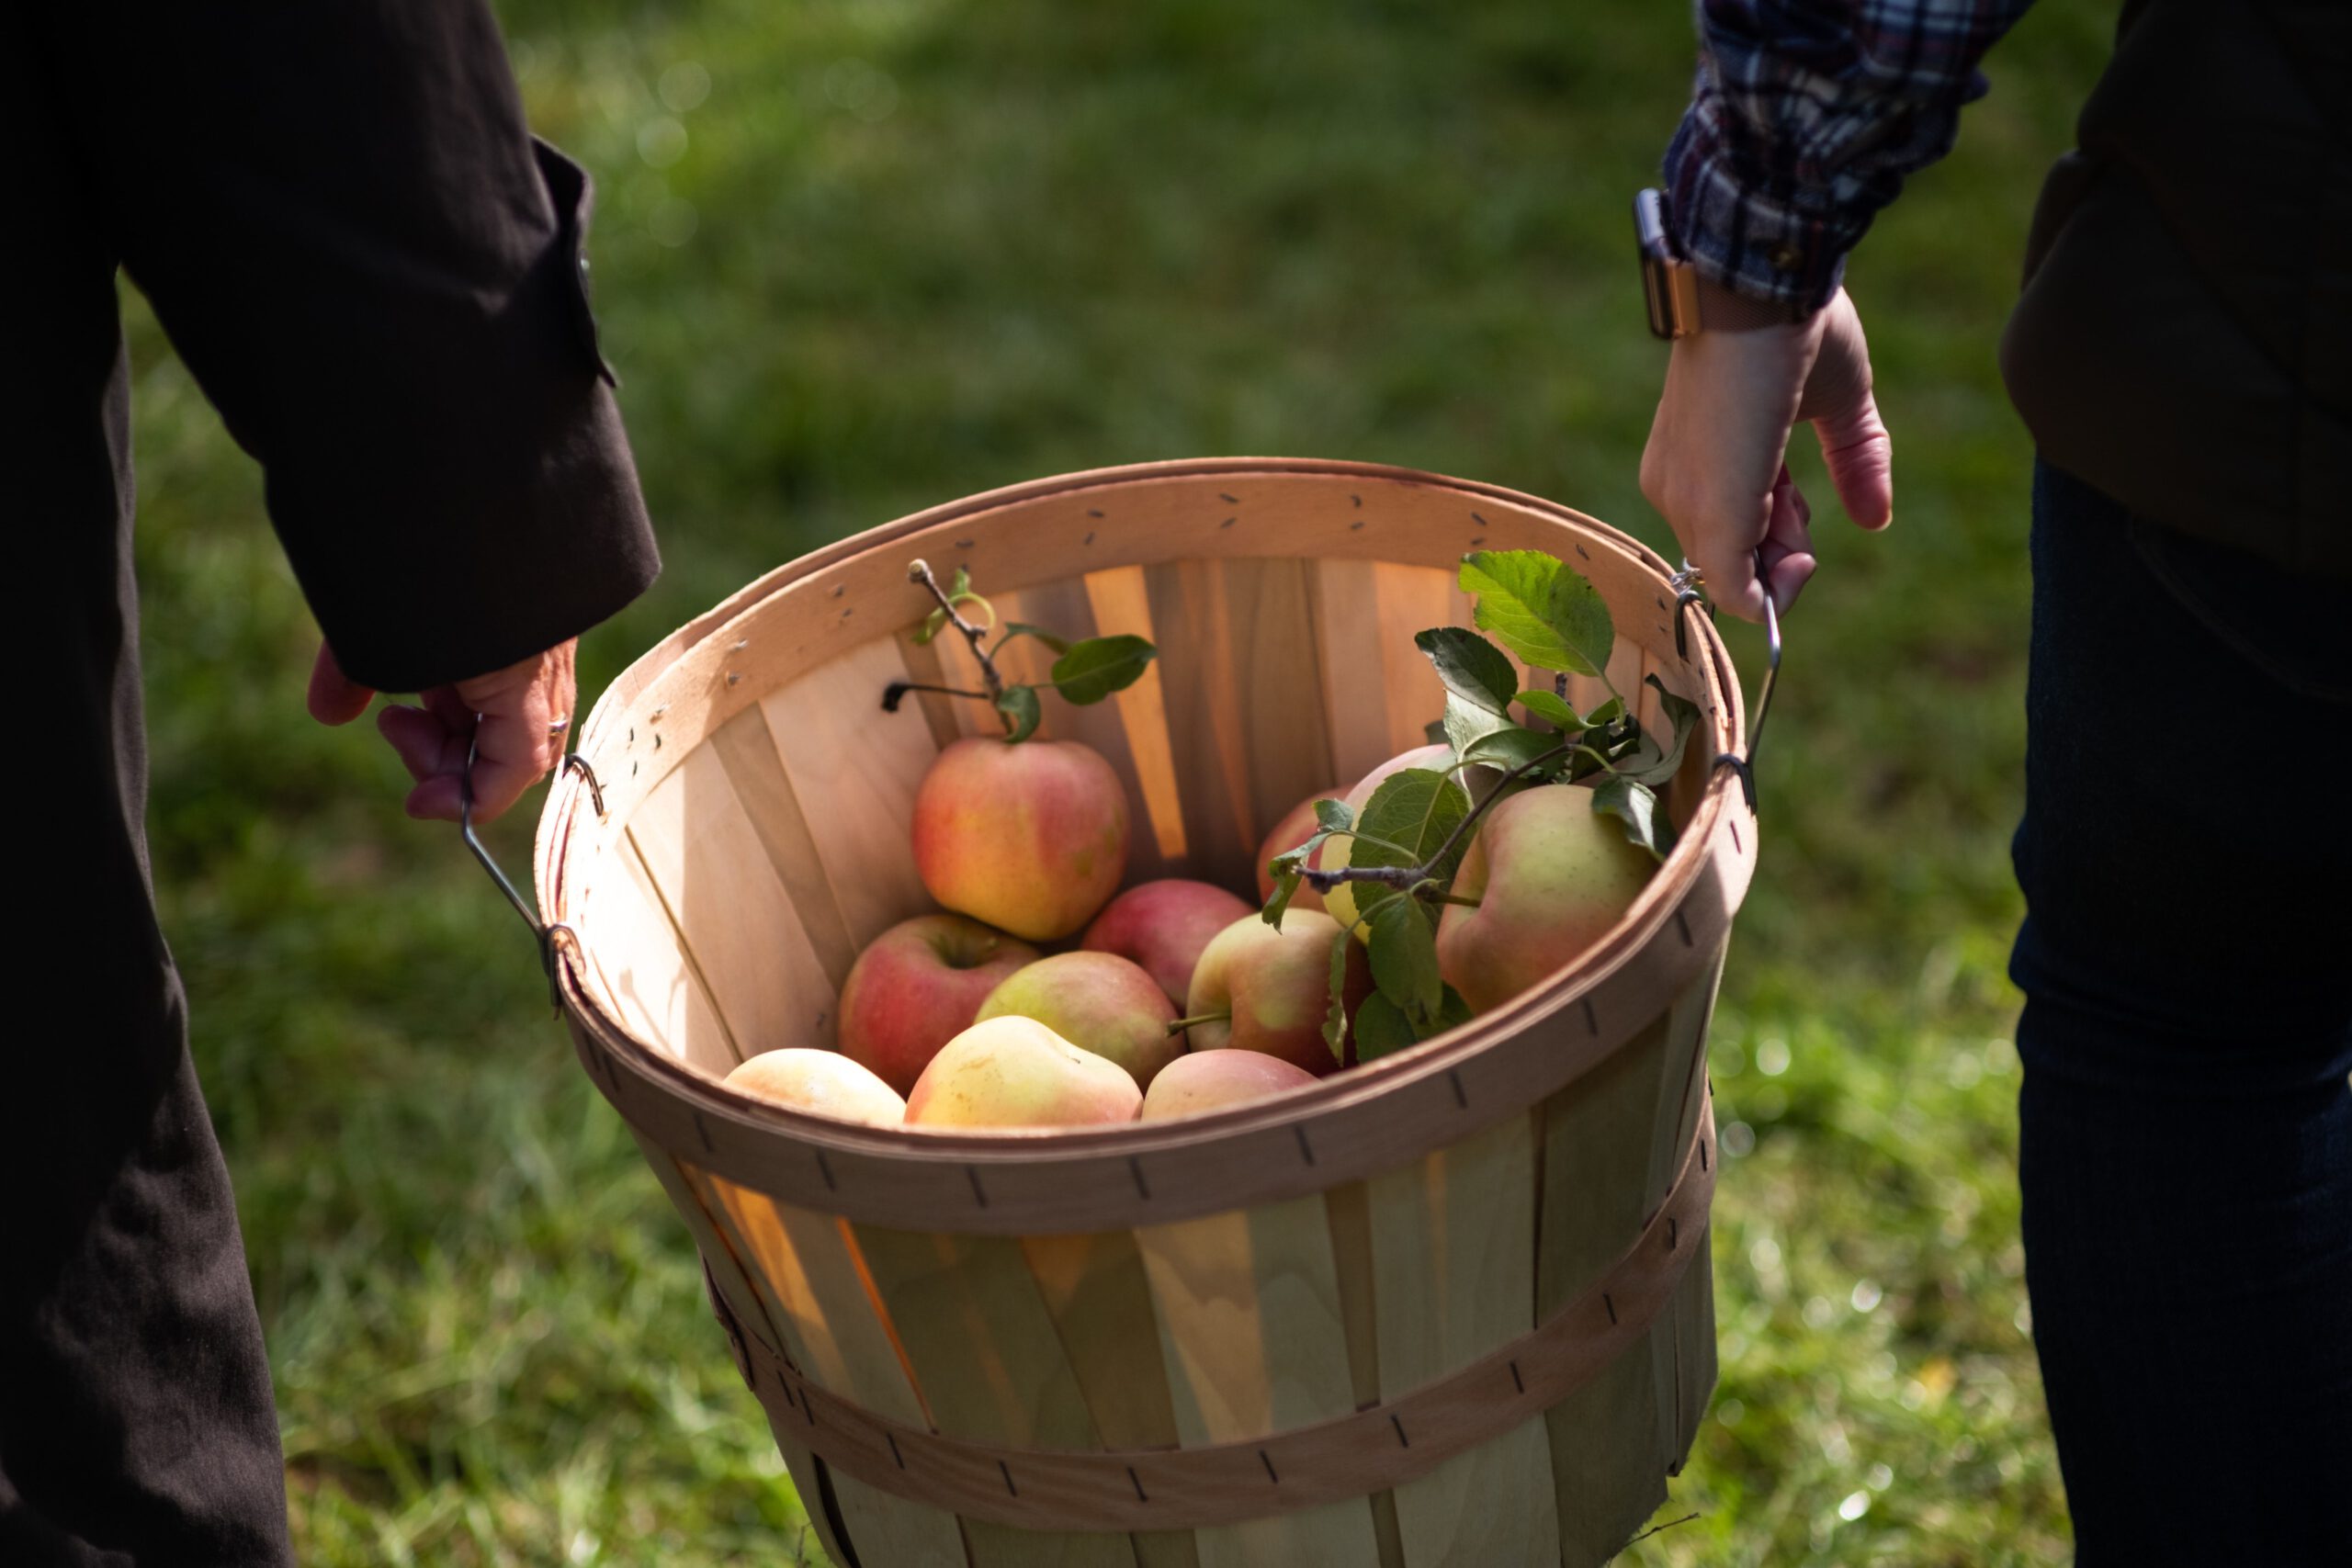 Lewin Farm in Calverton. Dort lassen sich im Herbst nicht nur Äpfel, sondern auch Tomaten, Kürbisse und frischer Pfeffer ernten.